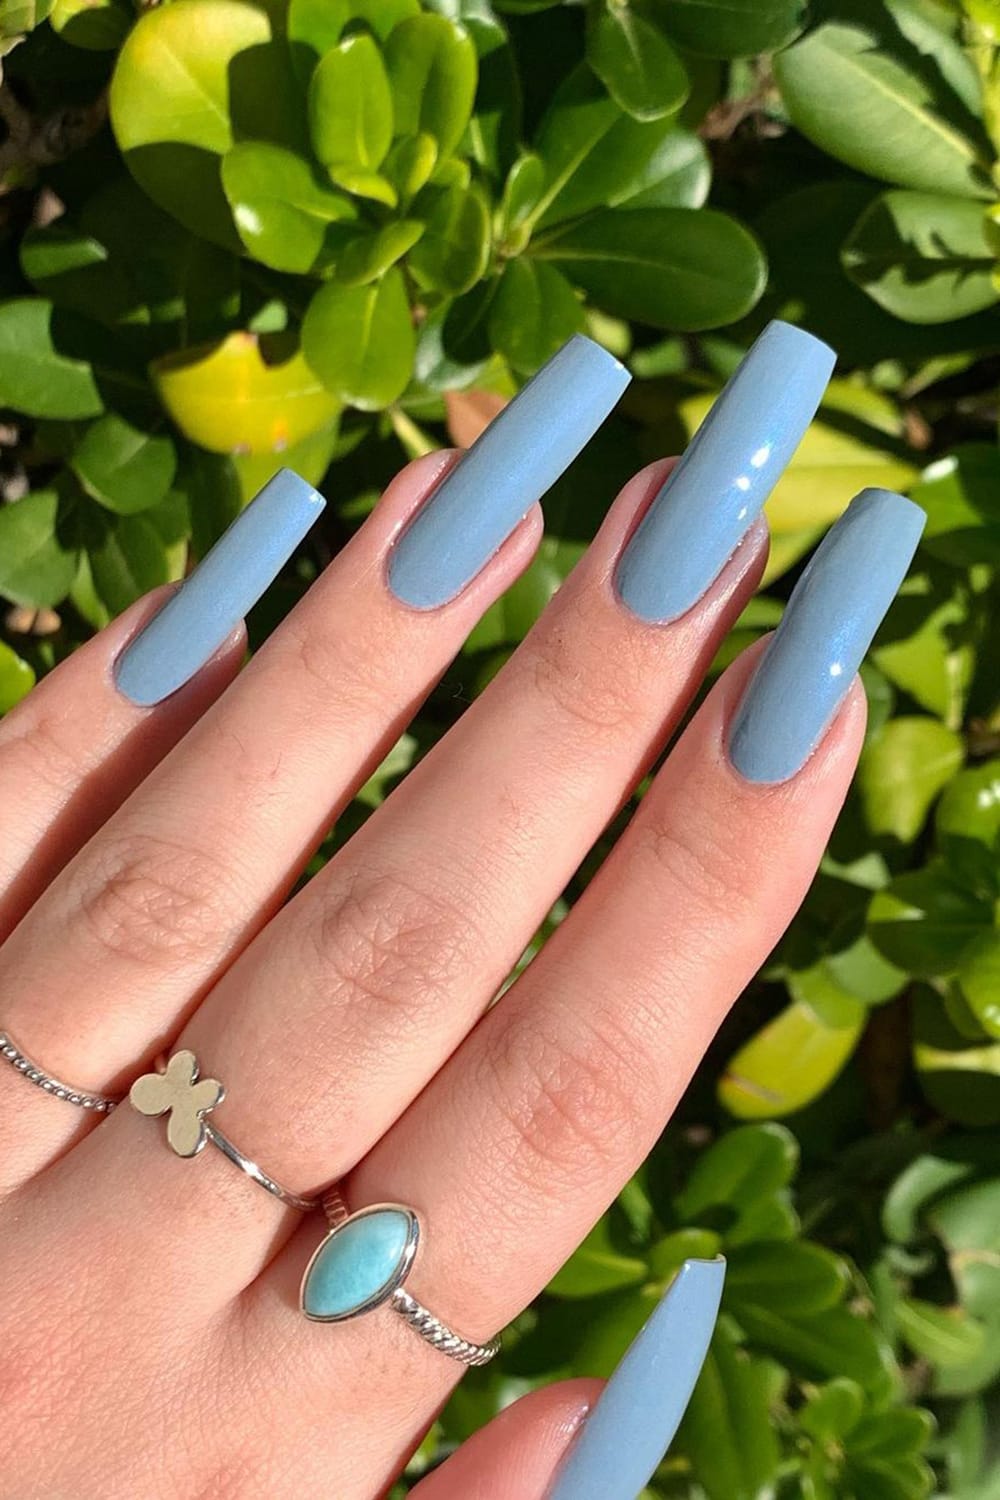 Blue grey nails